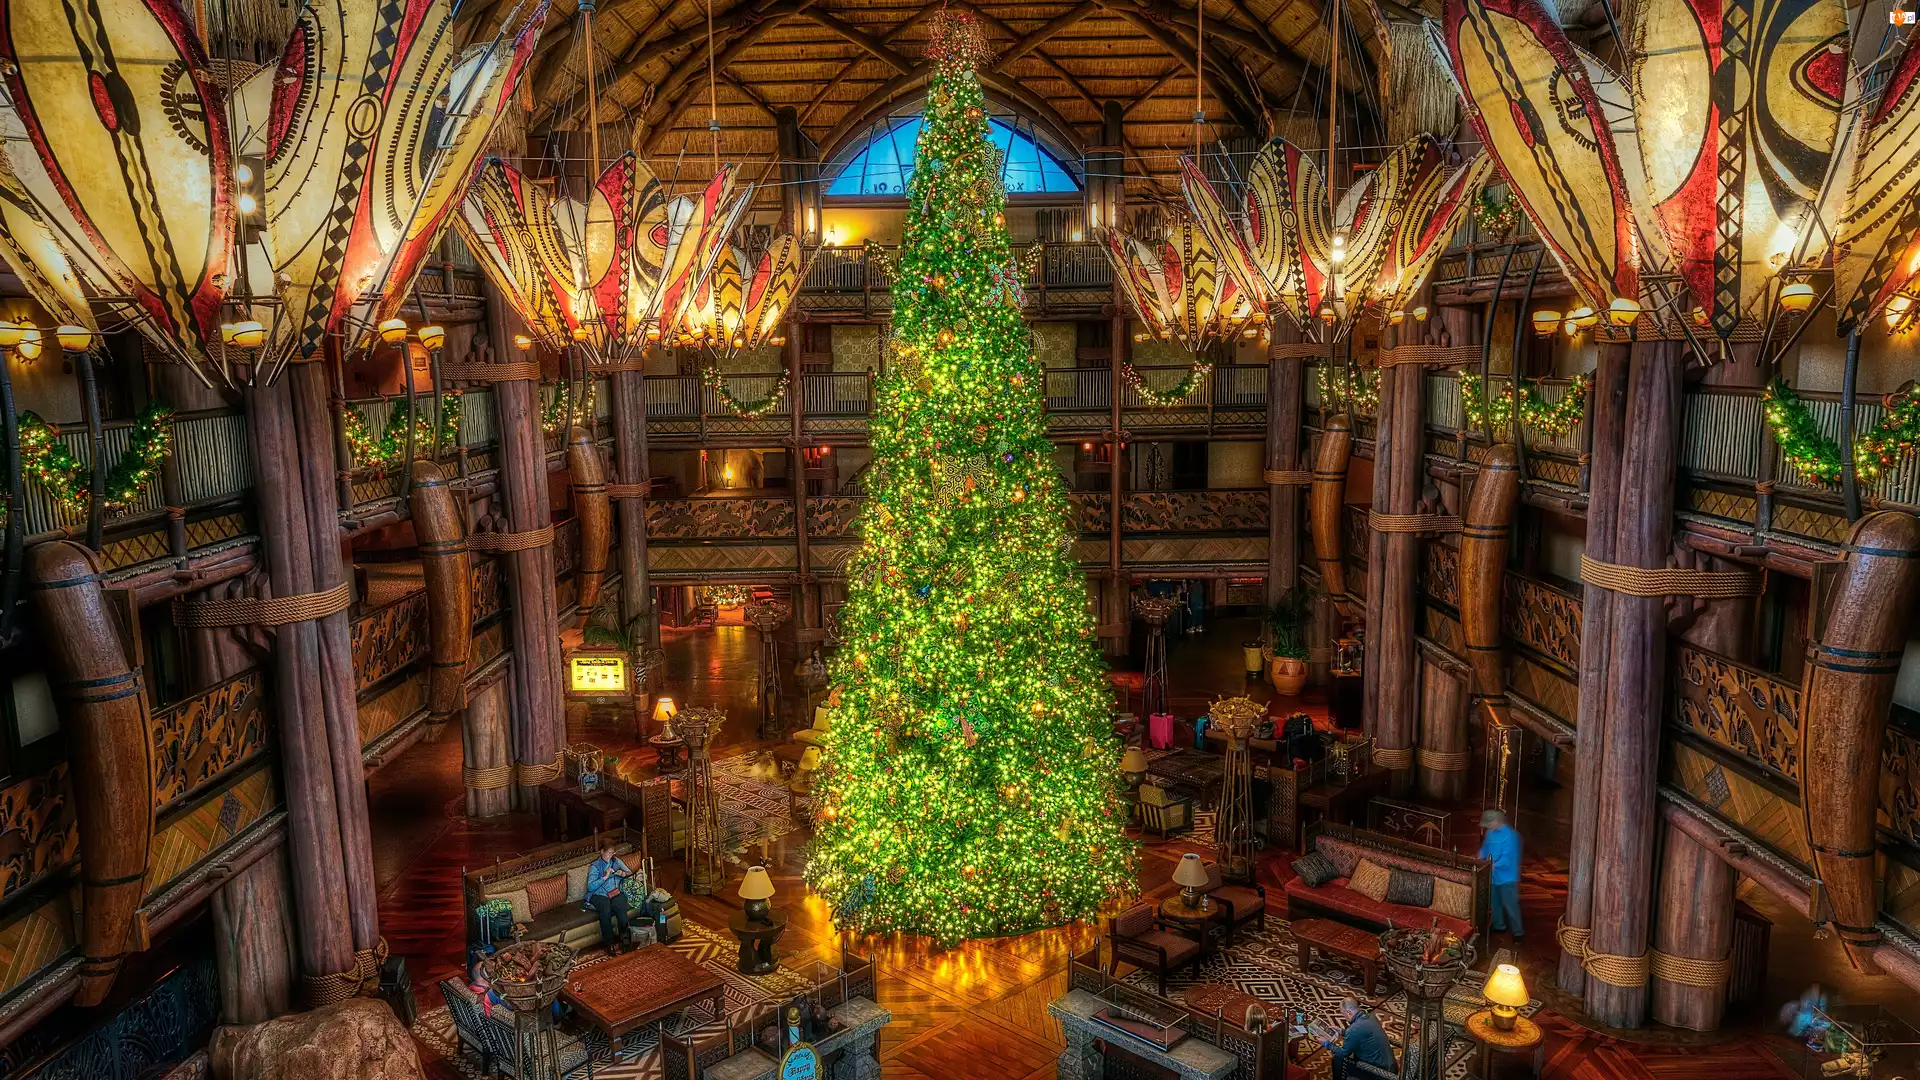 Disneys Animal Kingdom Villas, Boże Narodzenie, Jambo House, Orlando, Choinka, Hotel, Stany Zjednoczone, Wnętrze